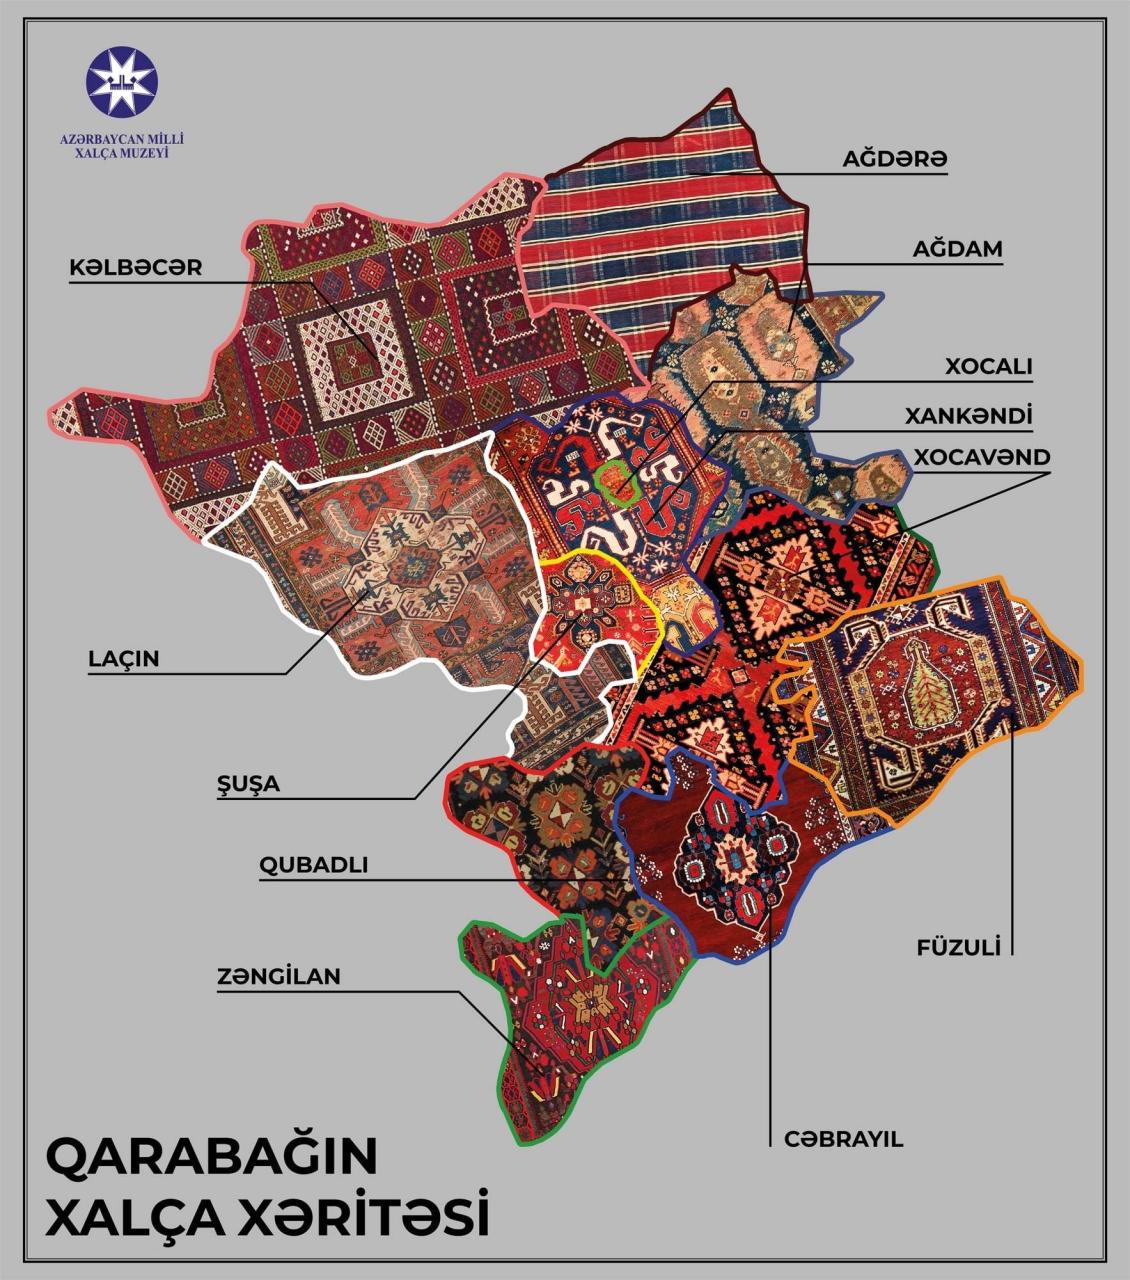 Carpet Museum displays full Karabakh Carpet Map [VIDEO]